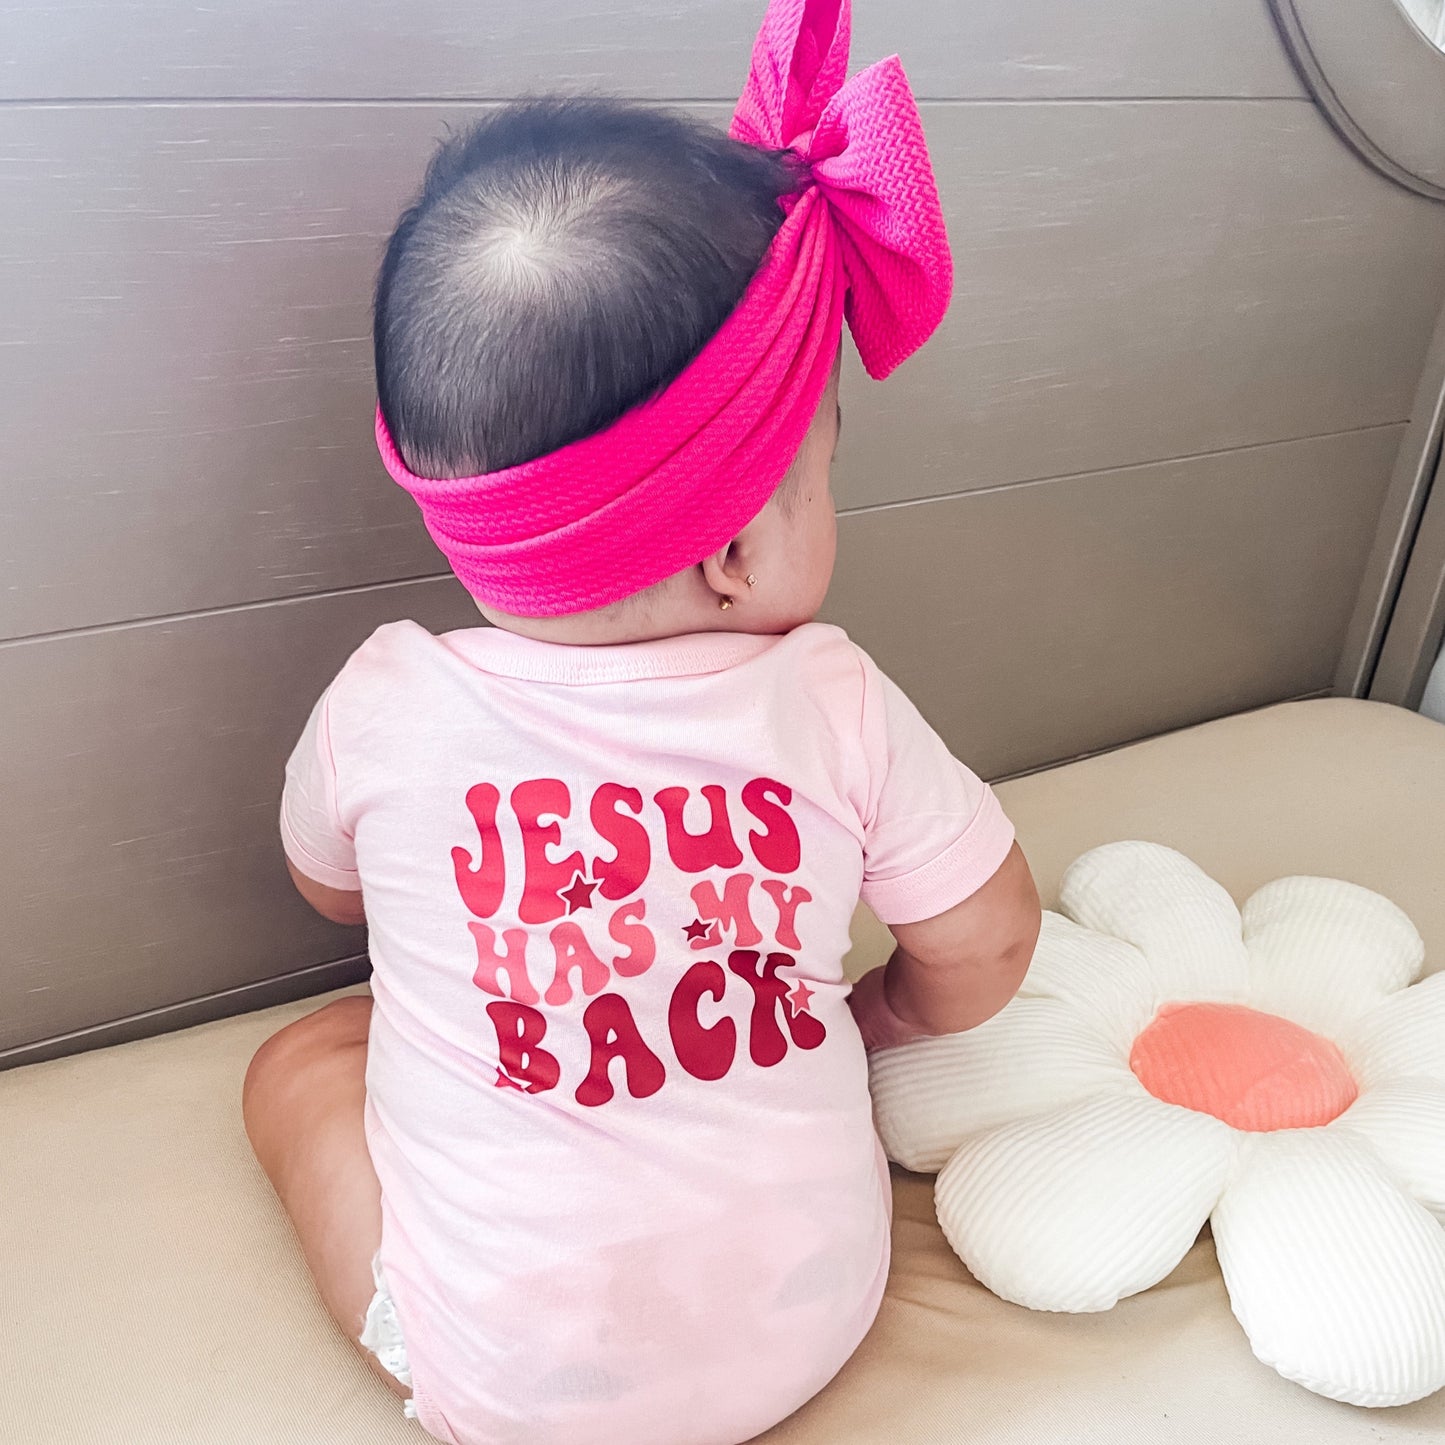 Jesus Has My Back - Pink Tee